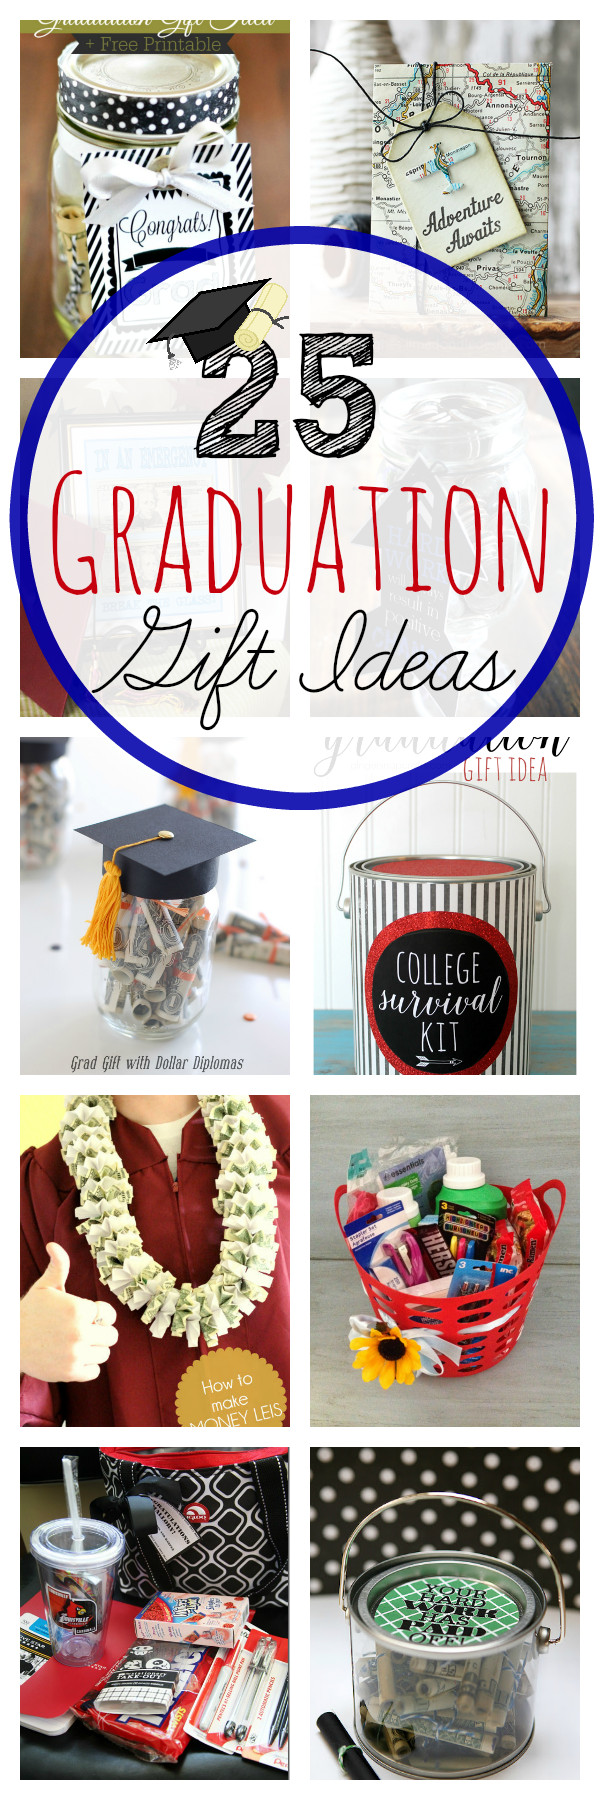 Boys Graduation Gift Ideas
 25 Graduation Gift Ideas